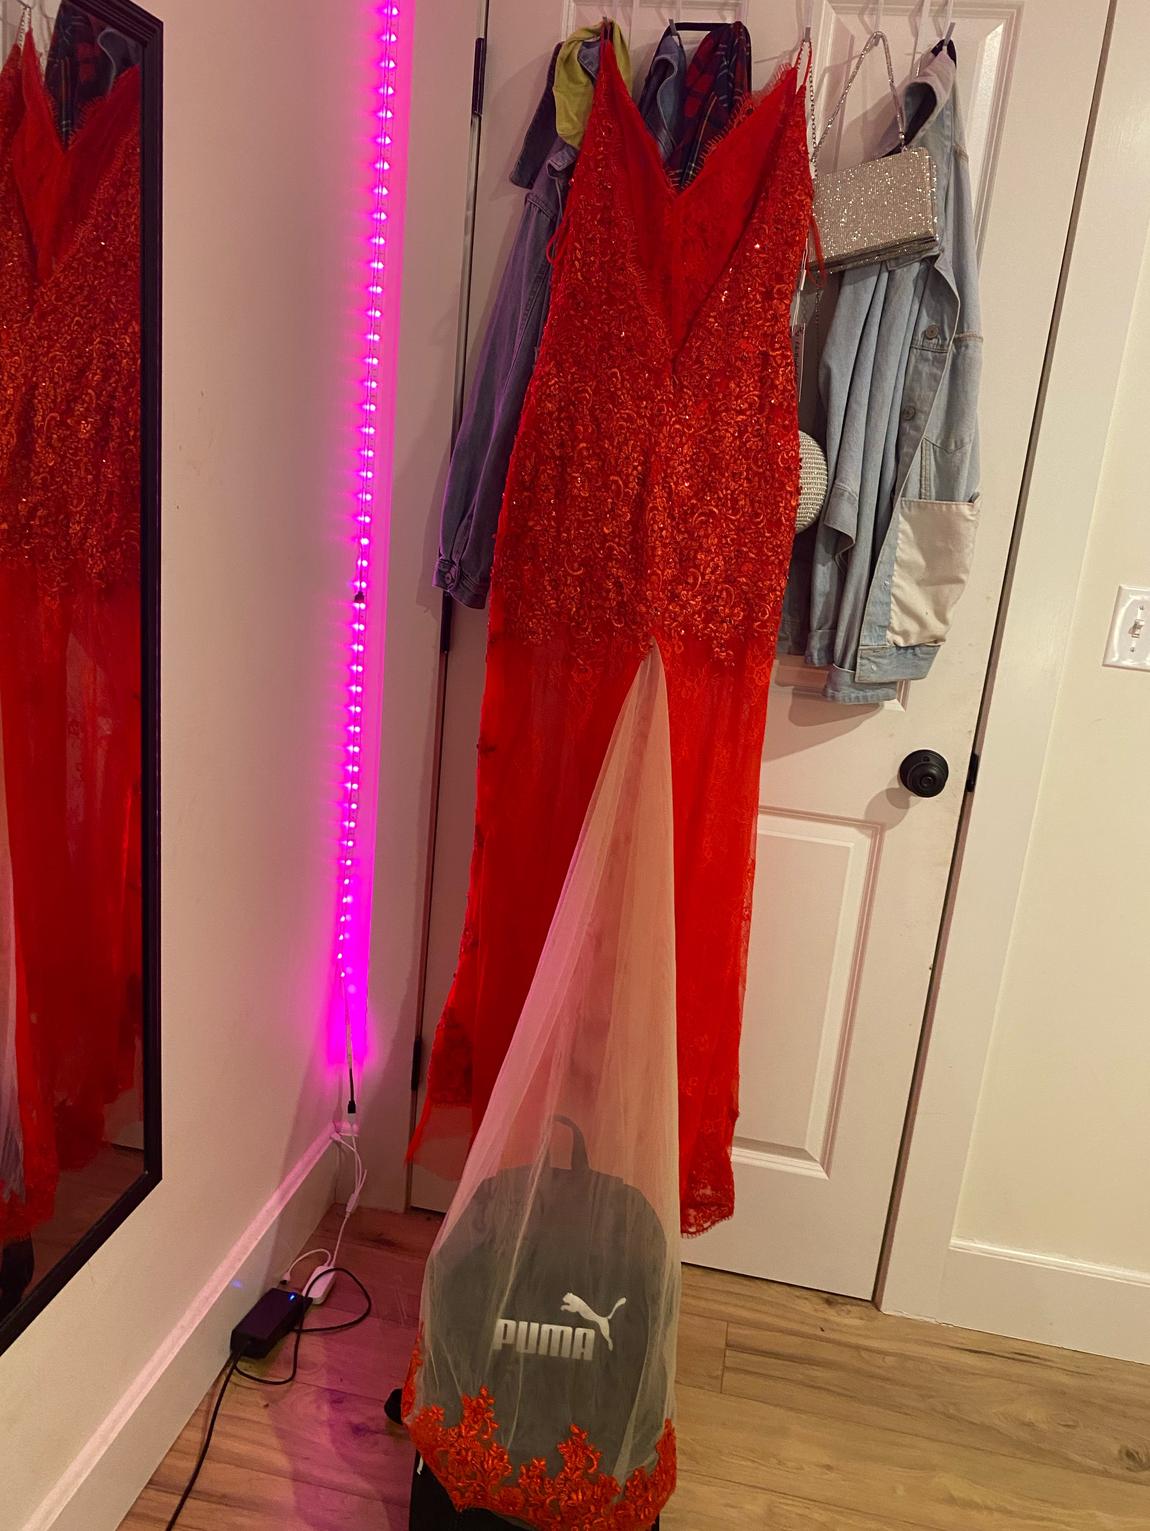 Okbridal Size 6 Prom Red Side Slit Dress on Queenly